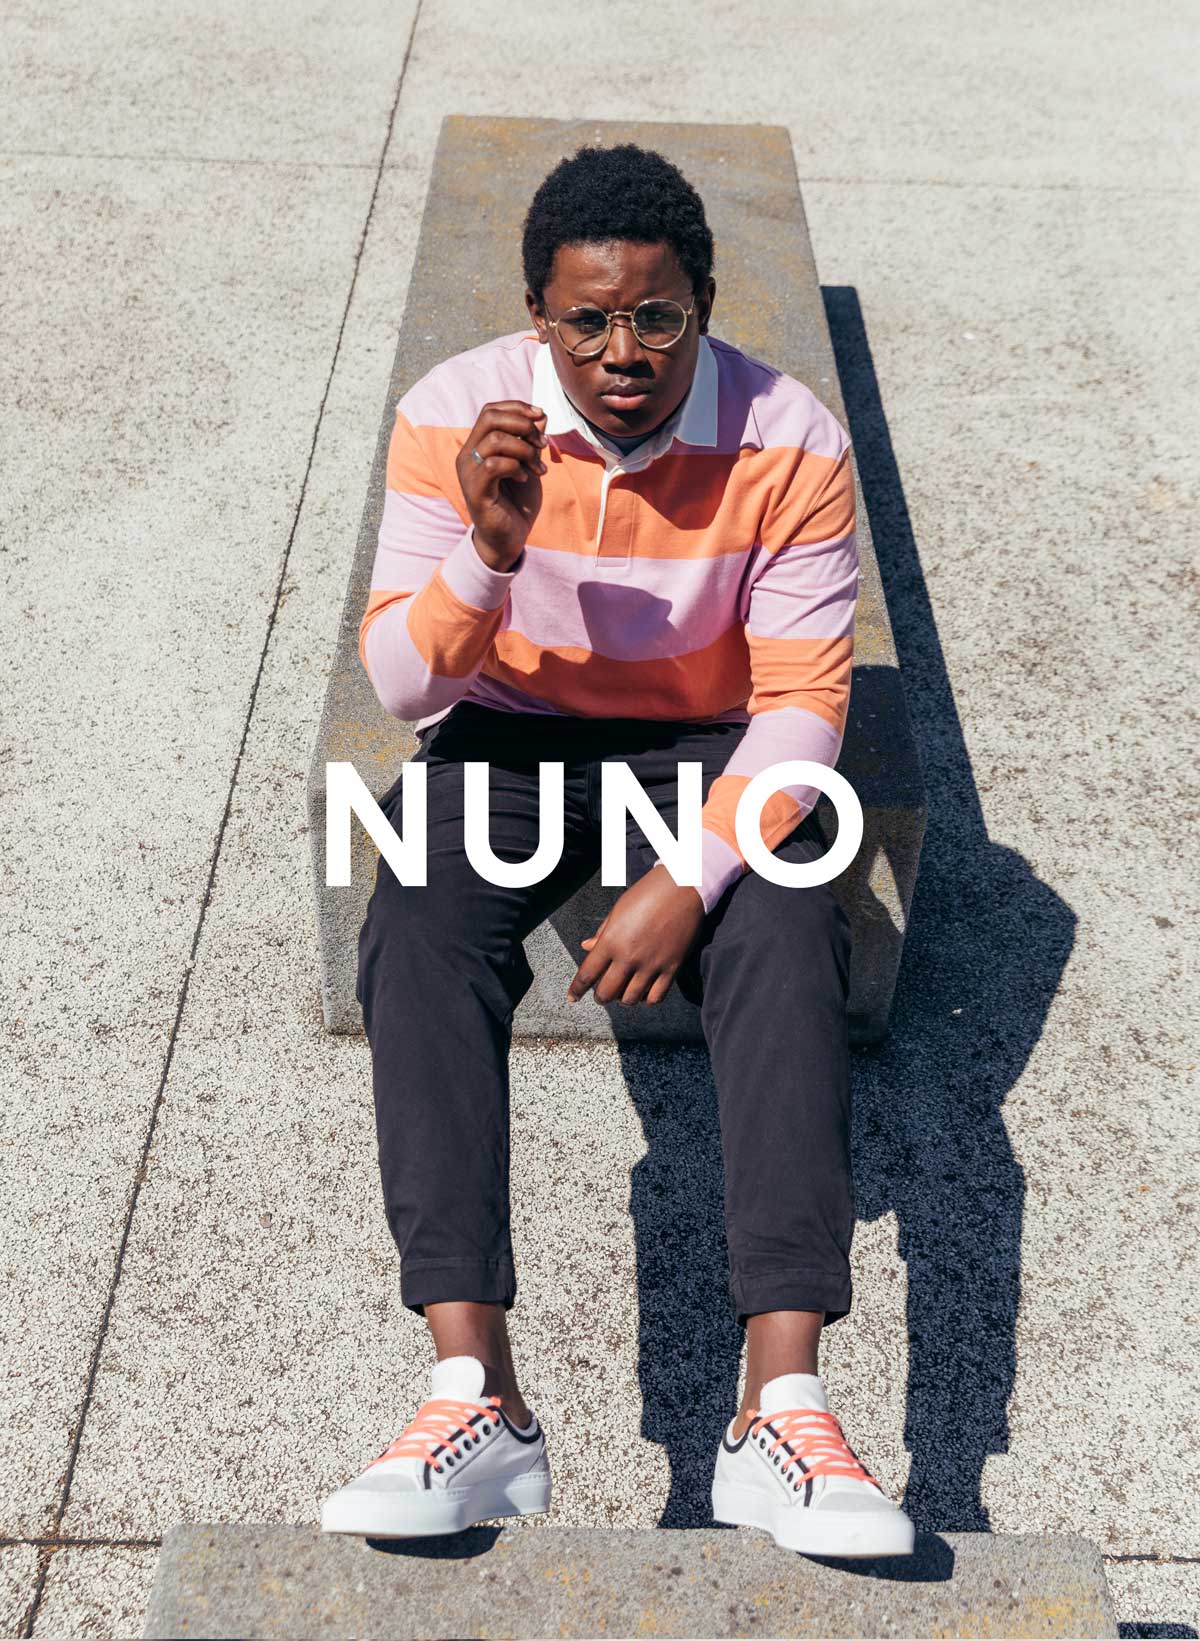 Nuno assis sur un mur, portant des vêtements personnalisés sneakers De Diverge, qui a un impact social grâce au projet Imagine.